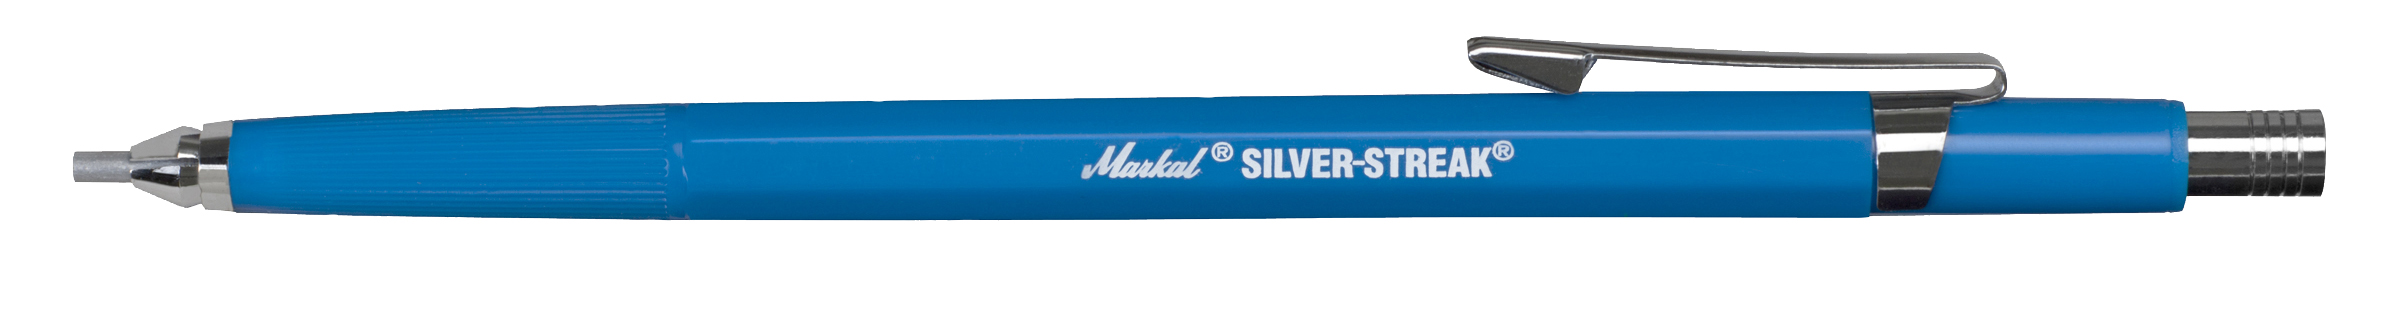 Silver-Streak Metal Marker Round, Silver